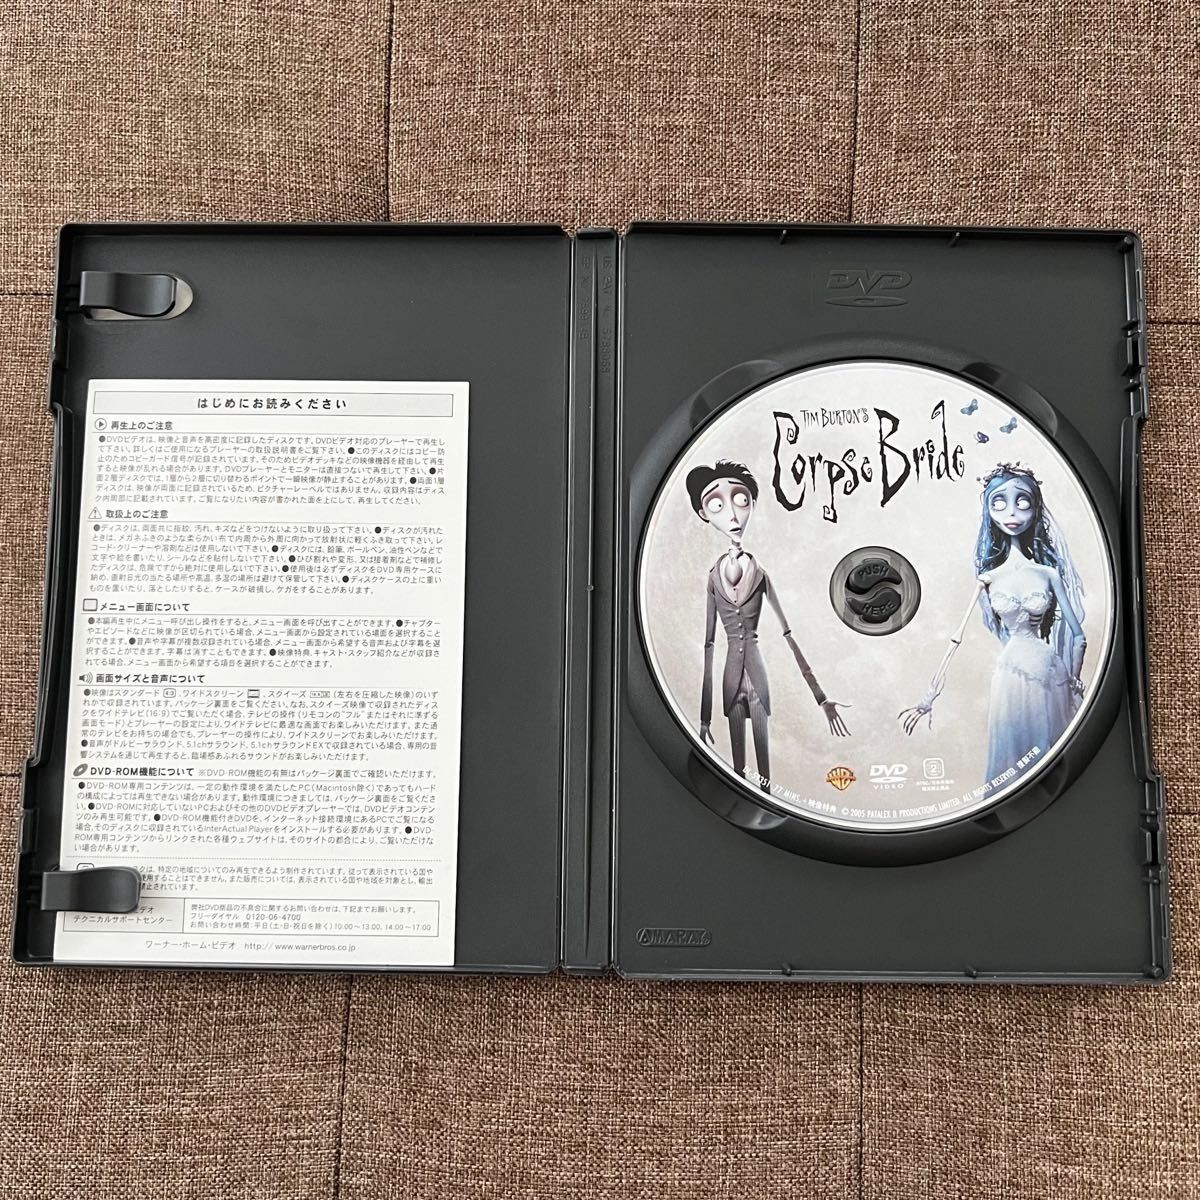 ティムバートンのコープスブライド 特別版 DVD